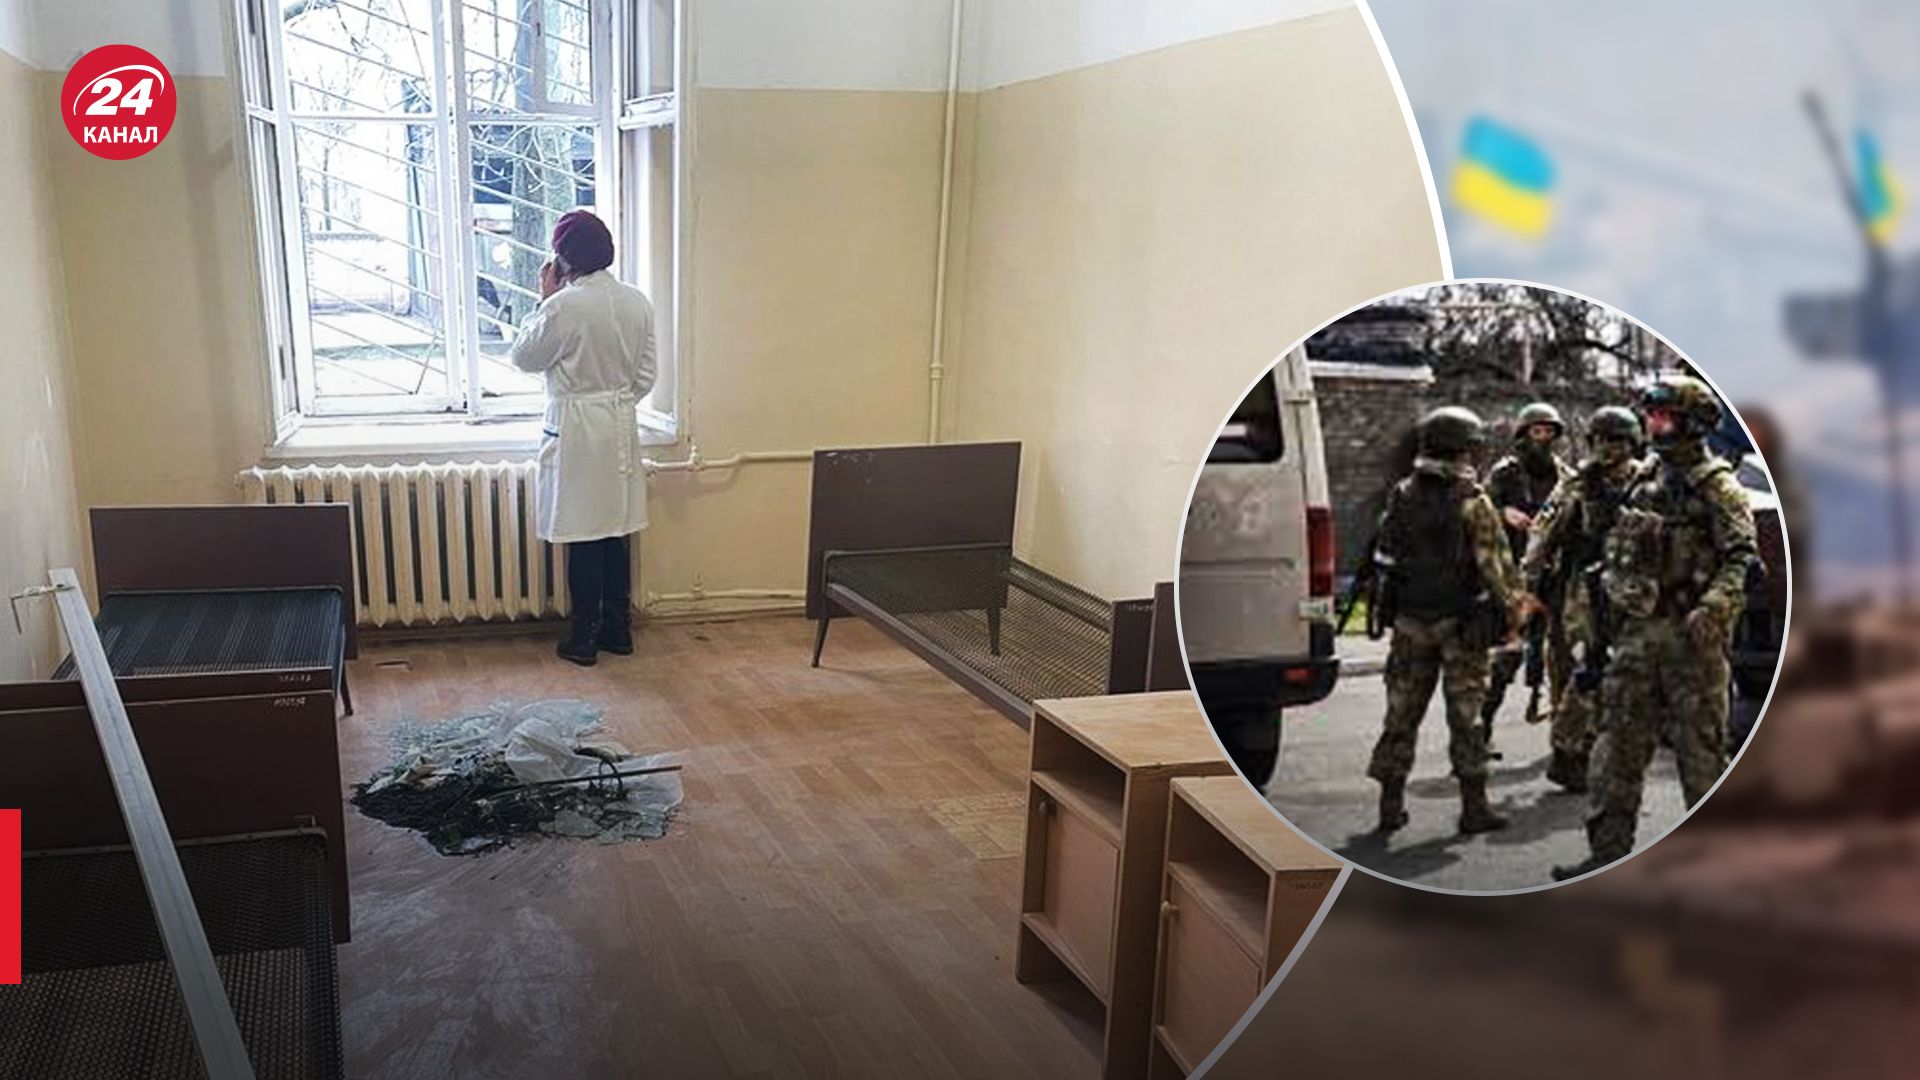 Вырывают даже розетки из стен: оккупанты грабят больницу в Голой Пристани - Здоровье 24